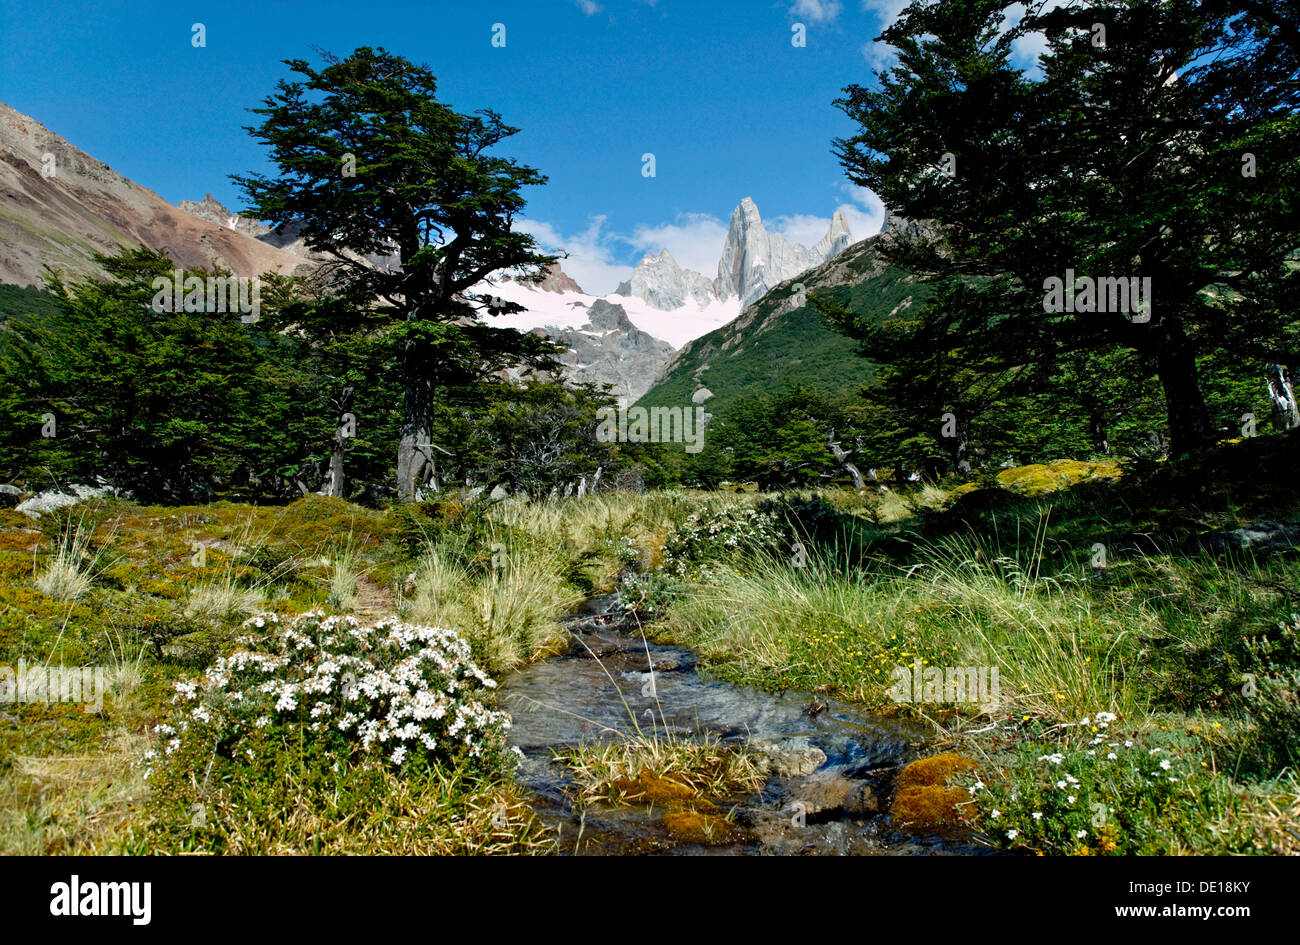 Los Glaciares National Park, UNESCO World Heritage Site, with Monte Fitz Roy, El Chalten, Cordillera, Santa Cruz province Stock Photo